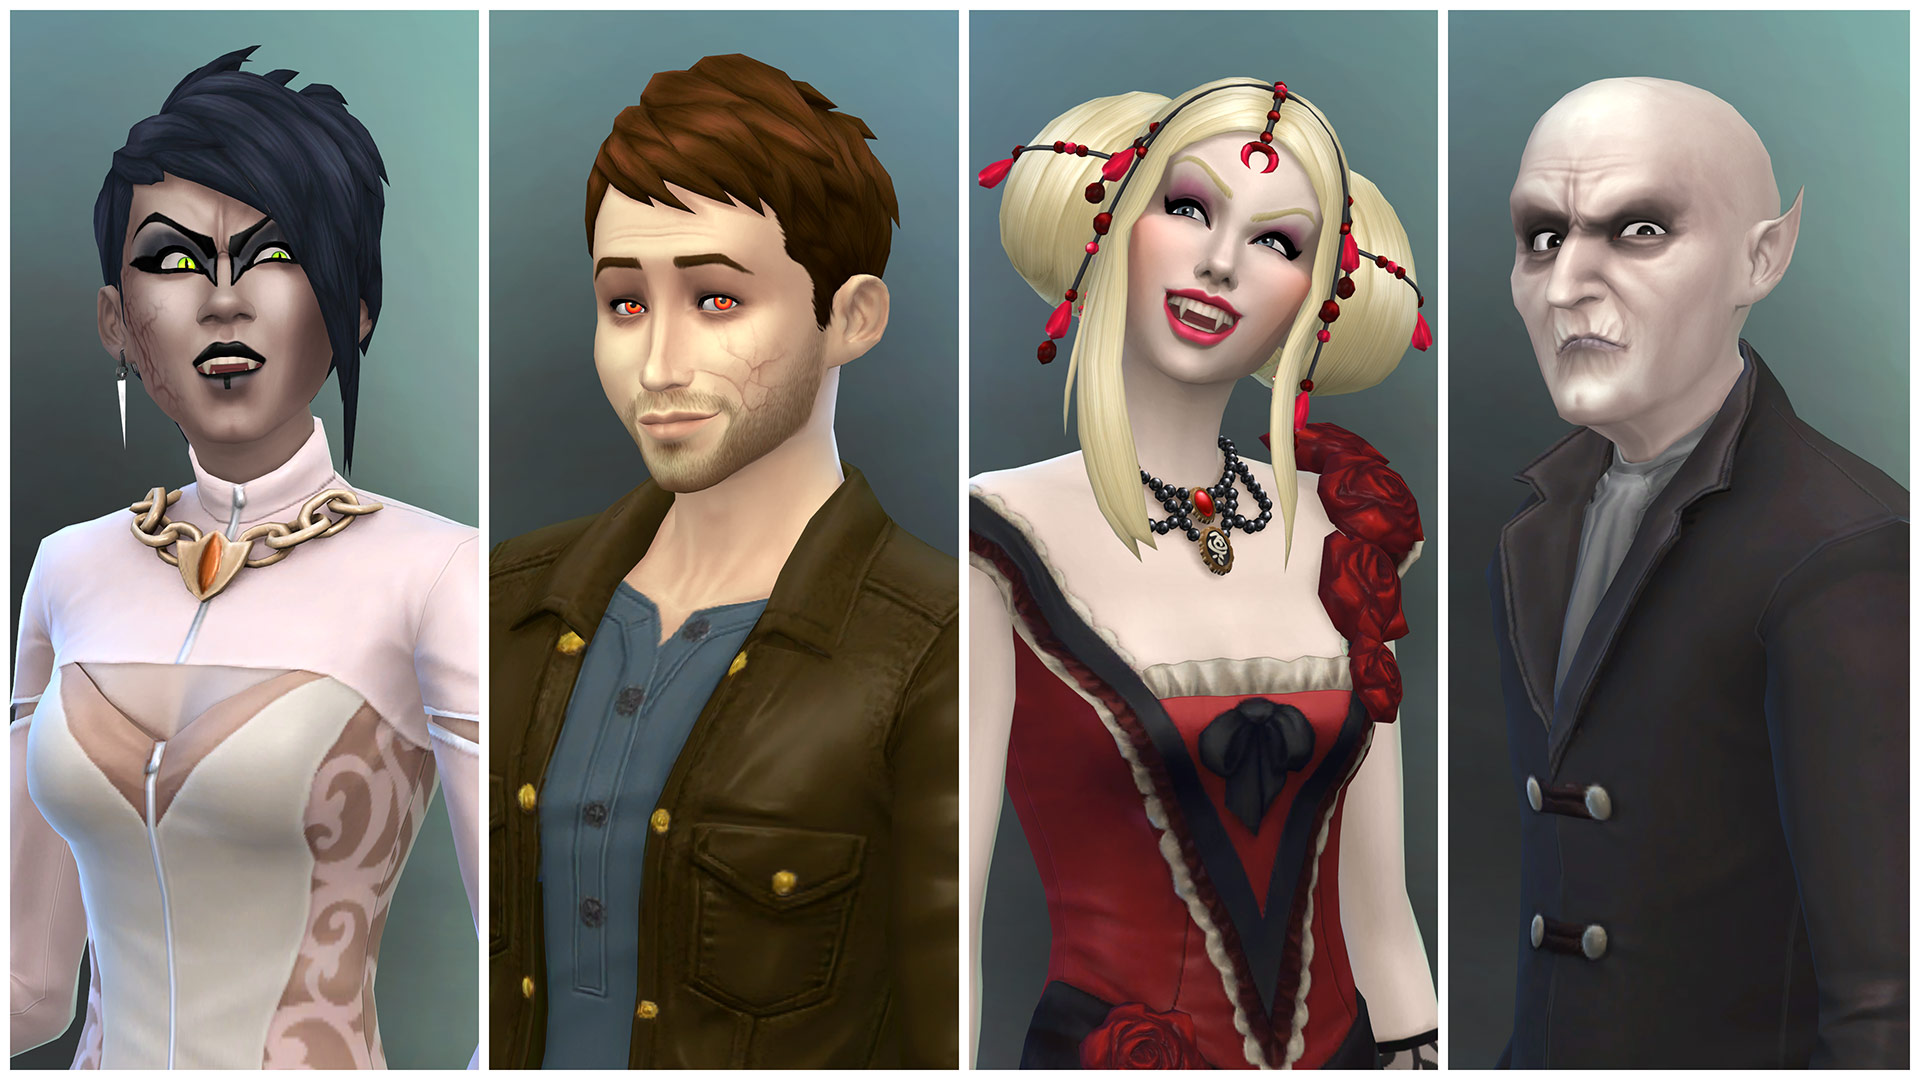 The Sims 4: Vampires - screenshot 1